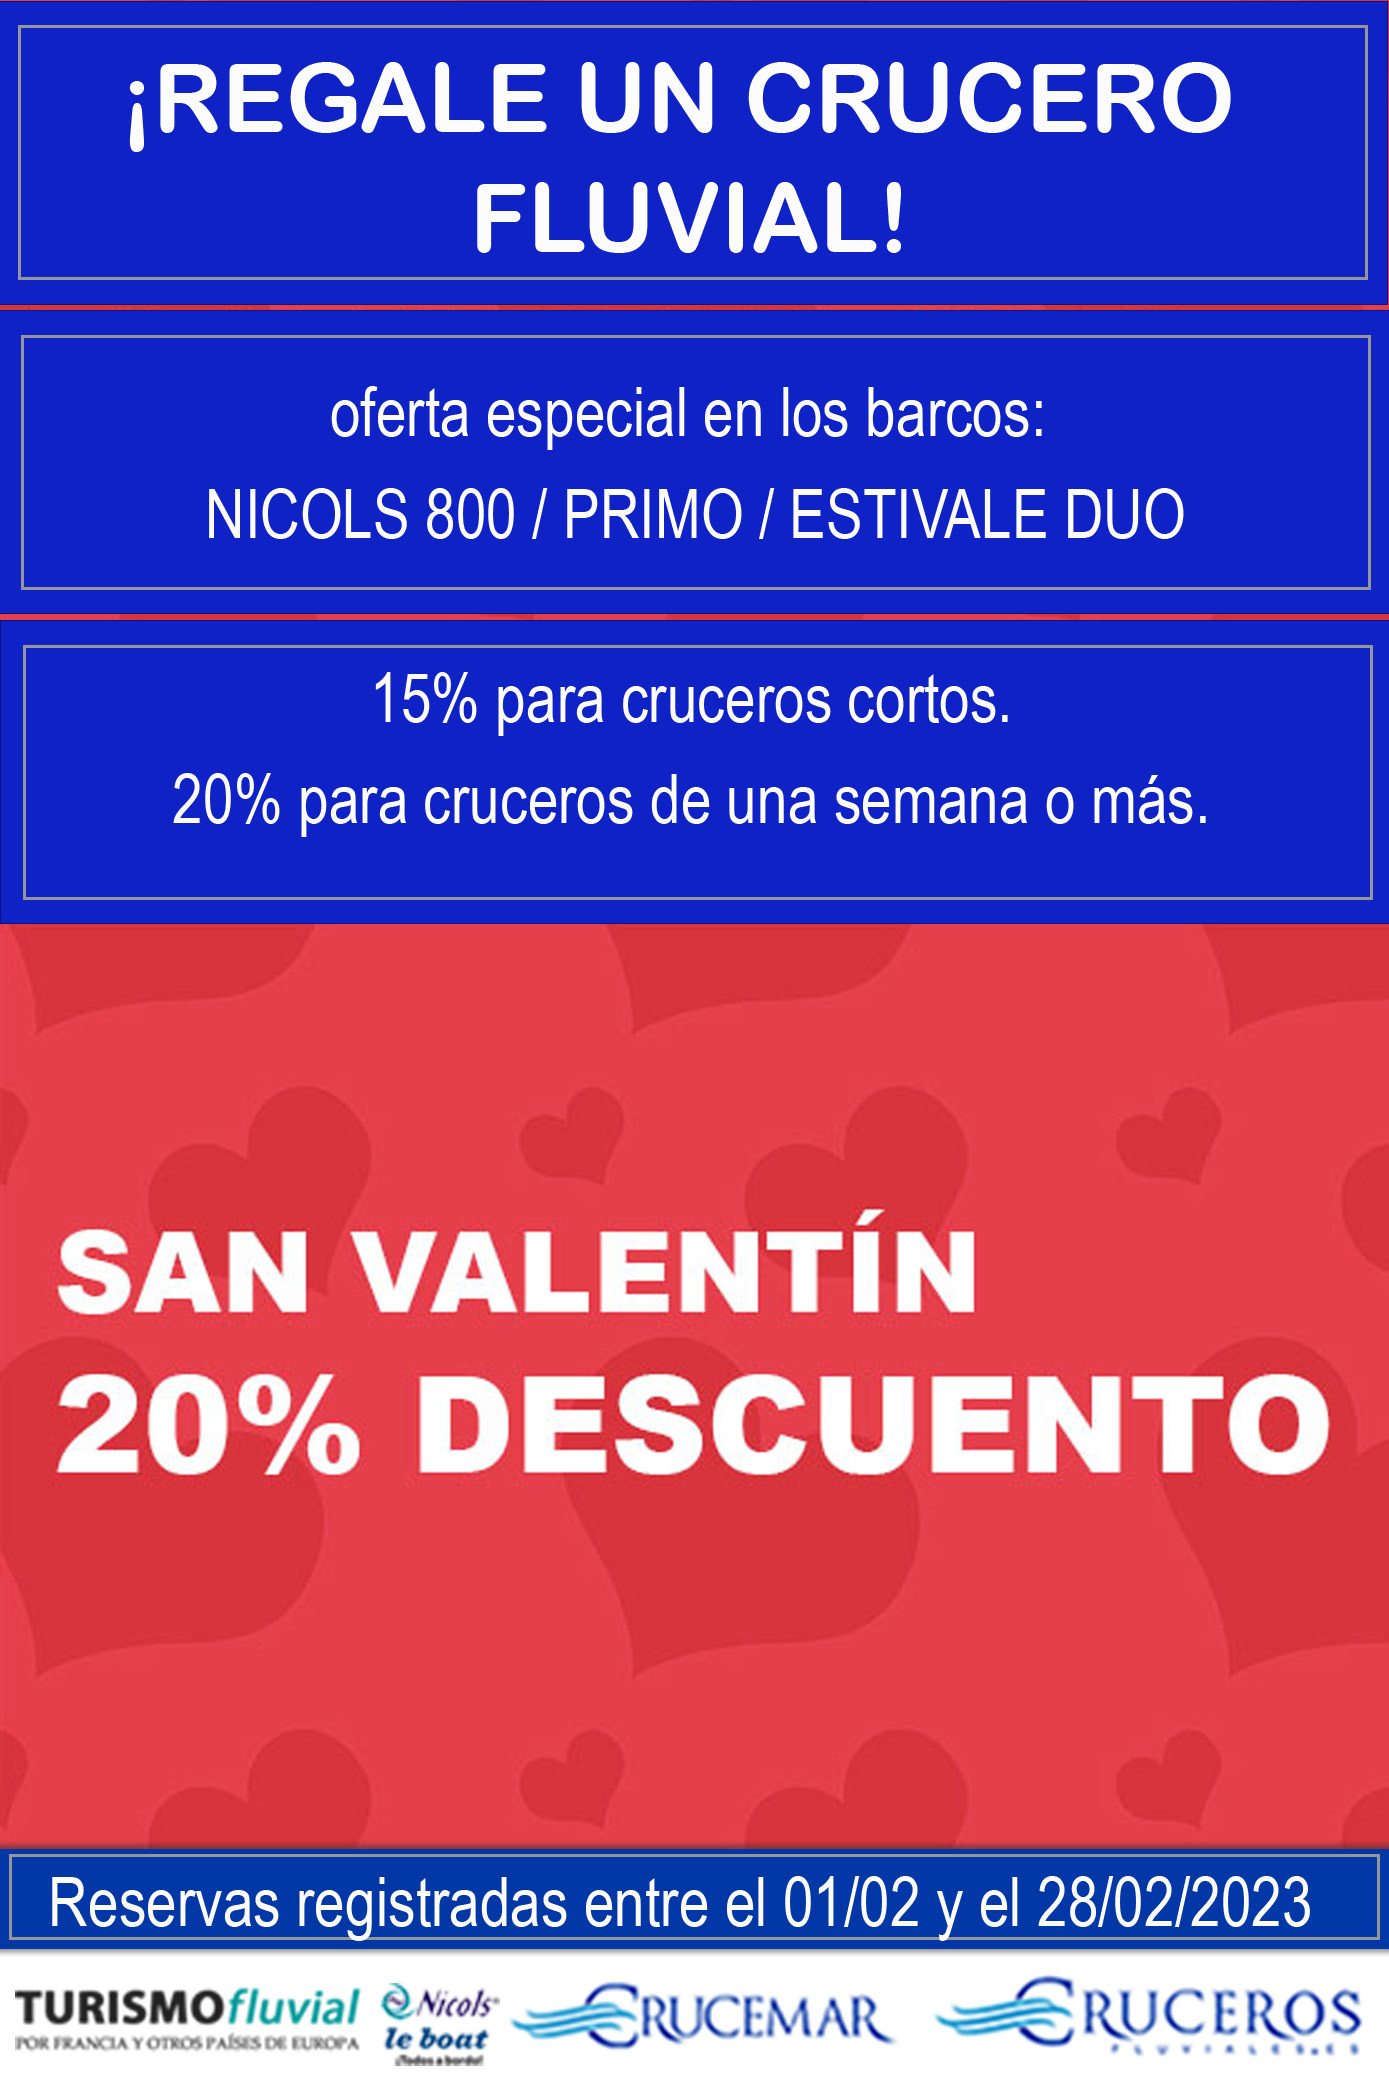 San Valentín 20% descuento